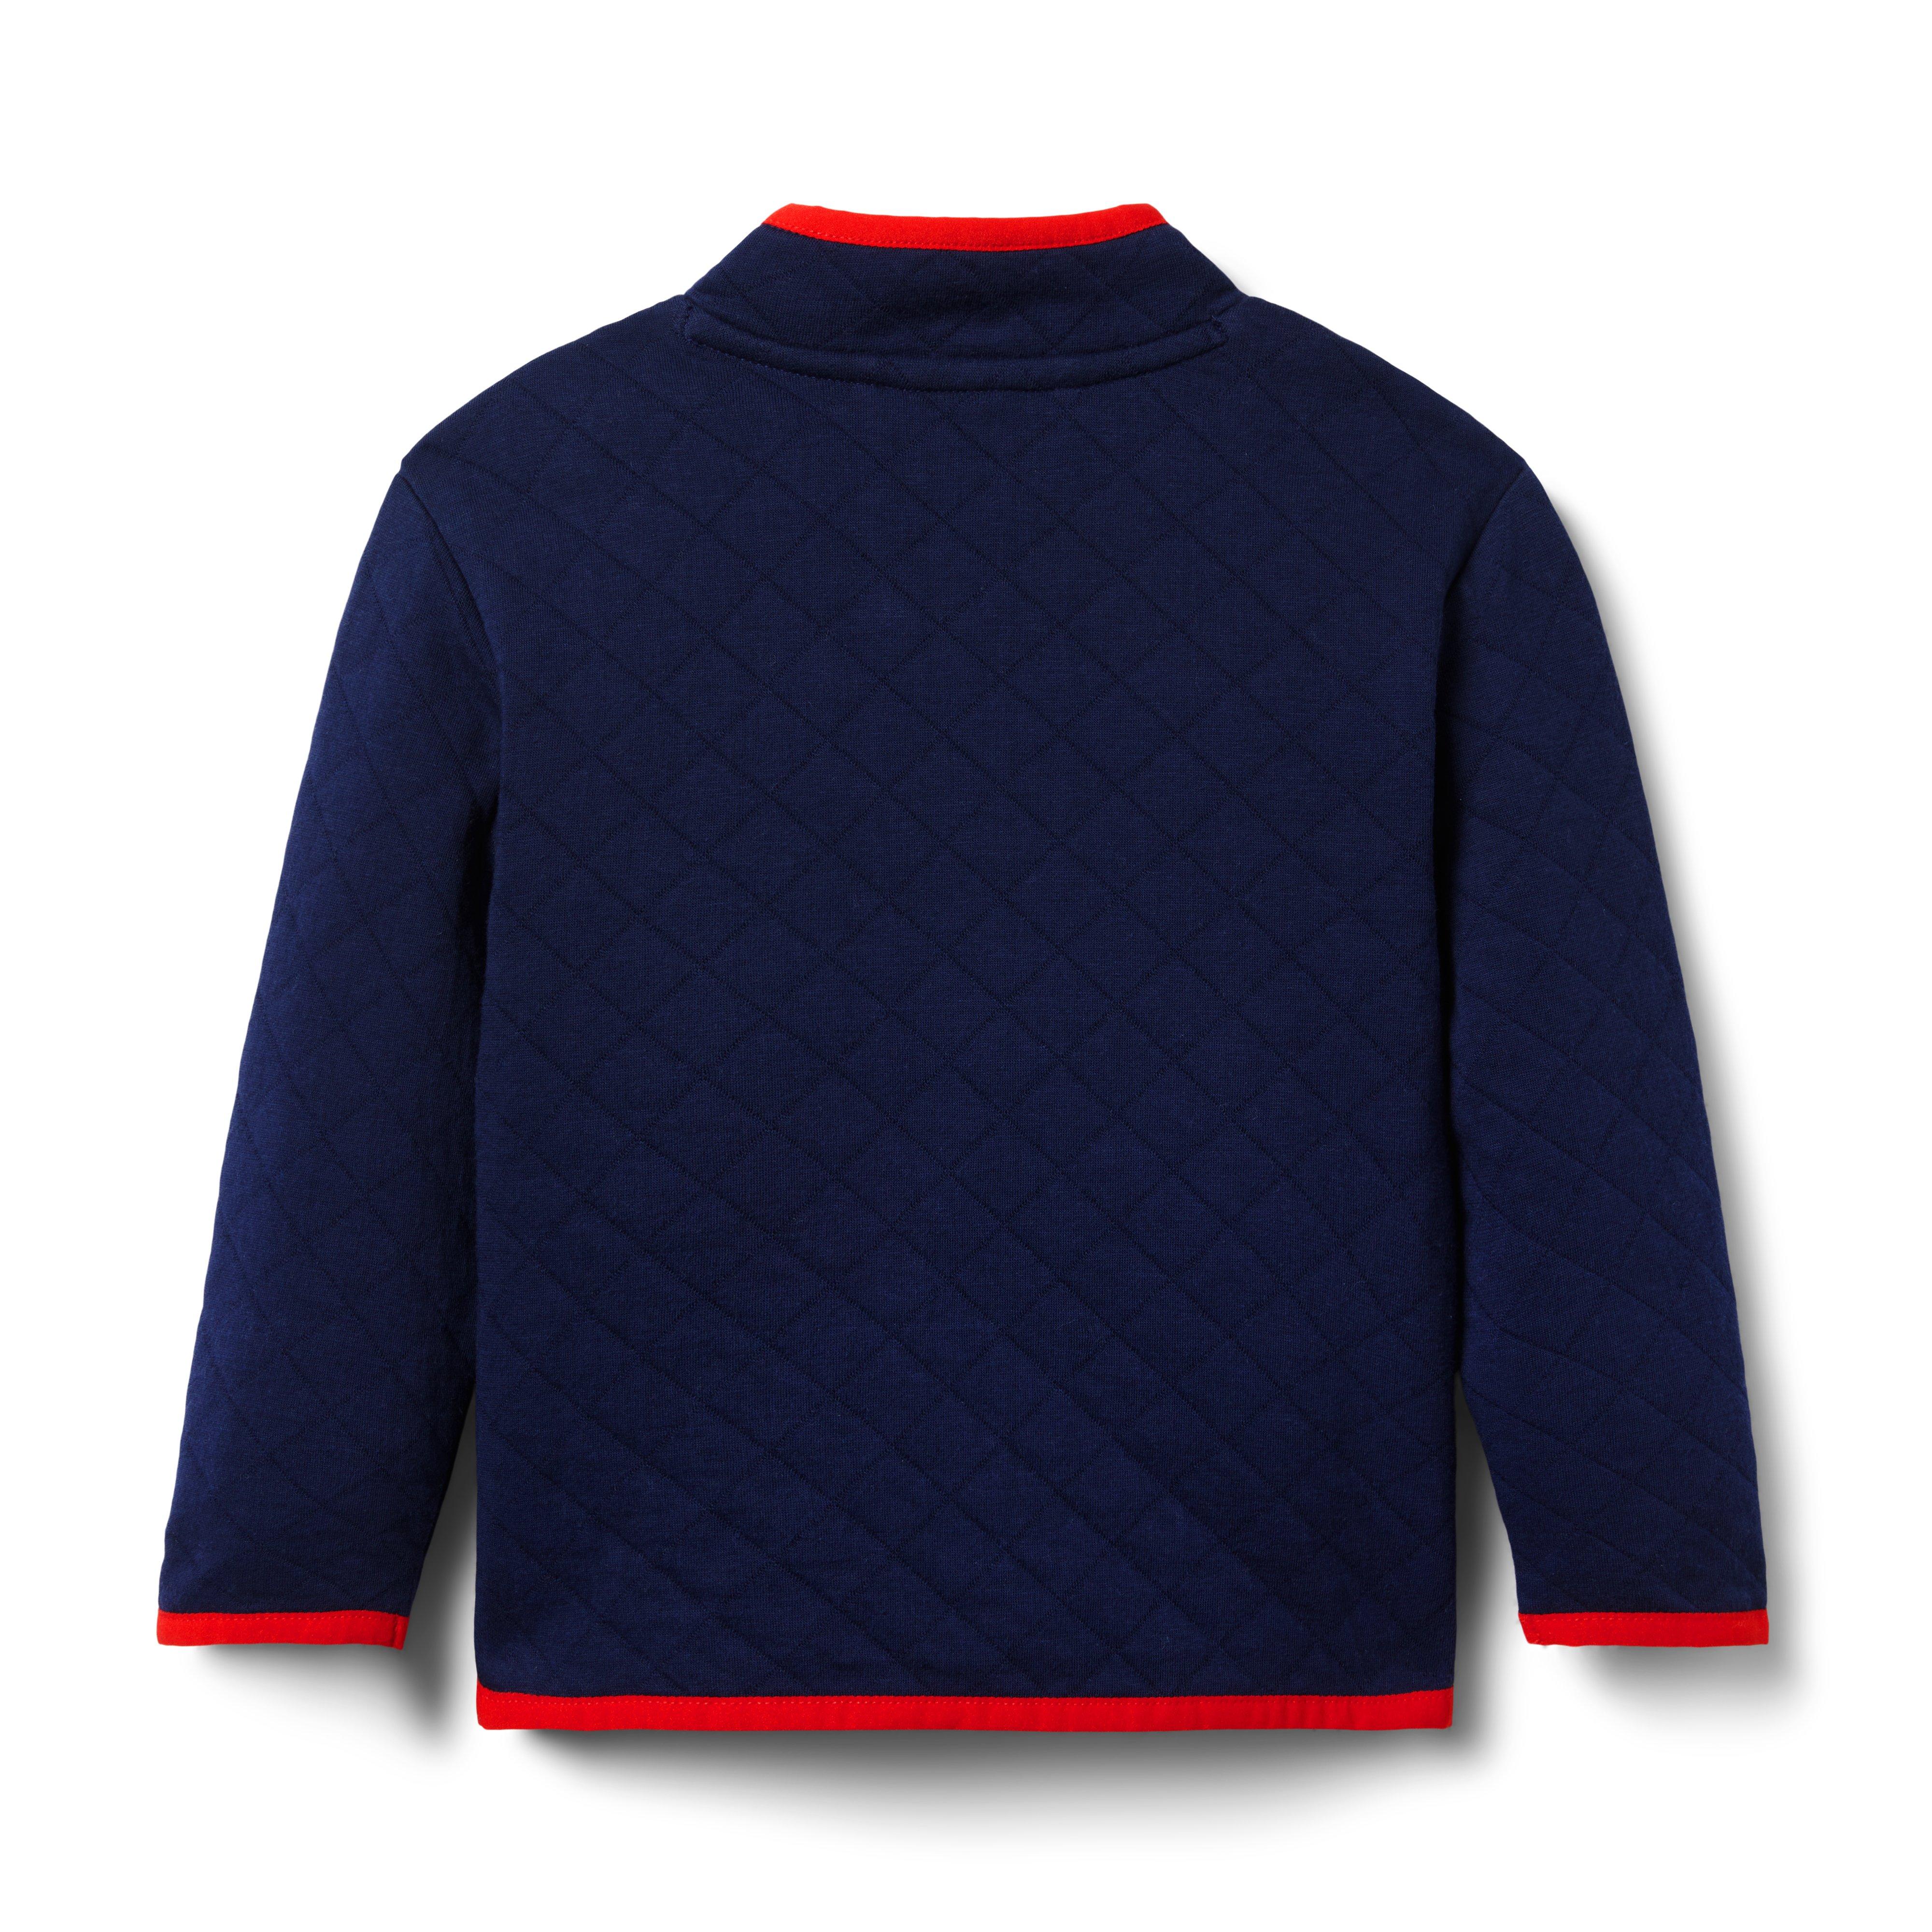 The Quilted Half-Zip Sweatshirt